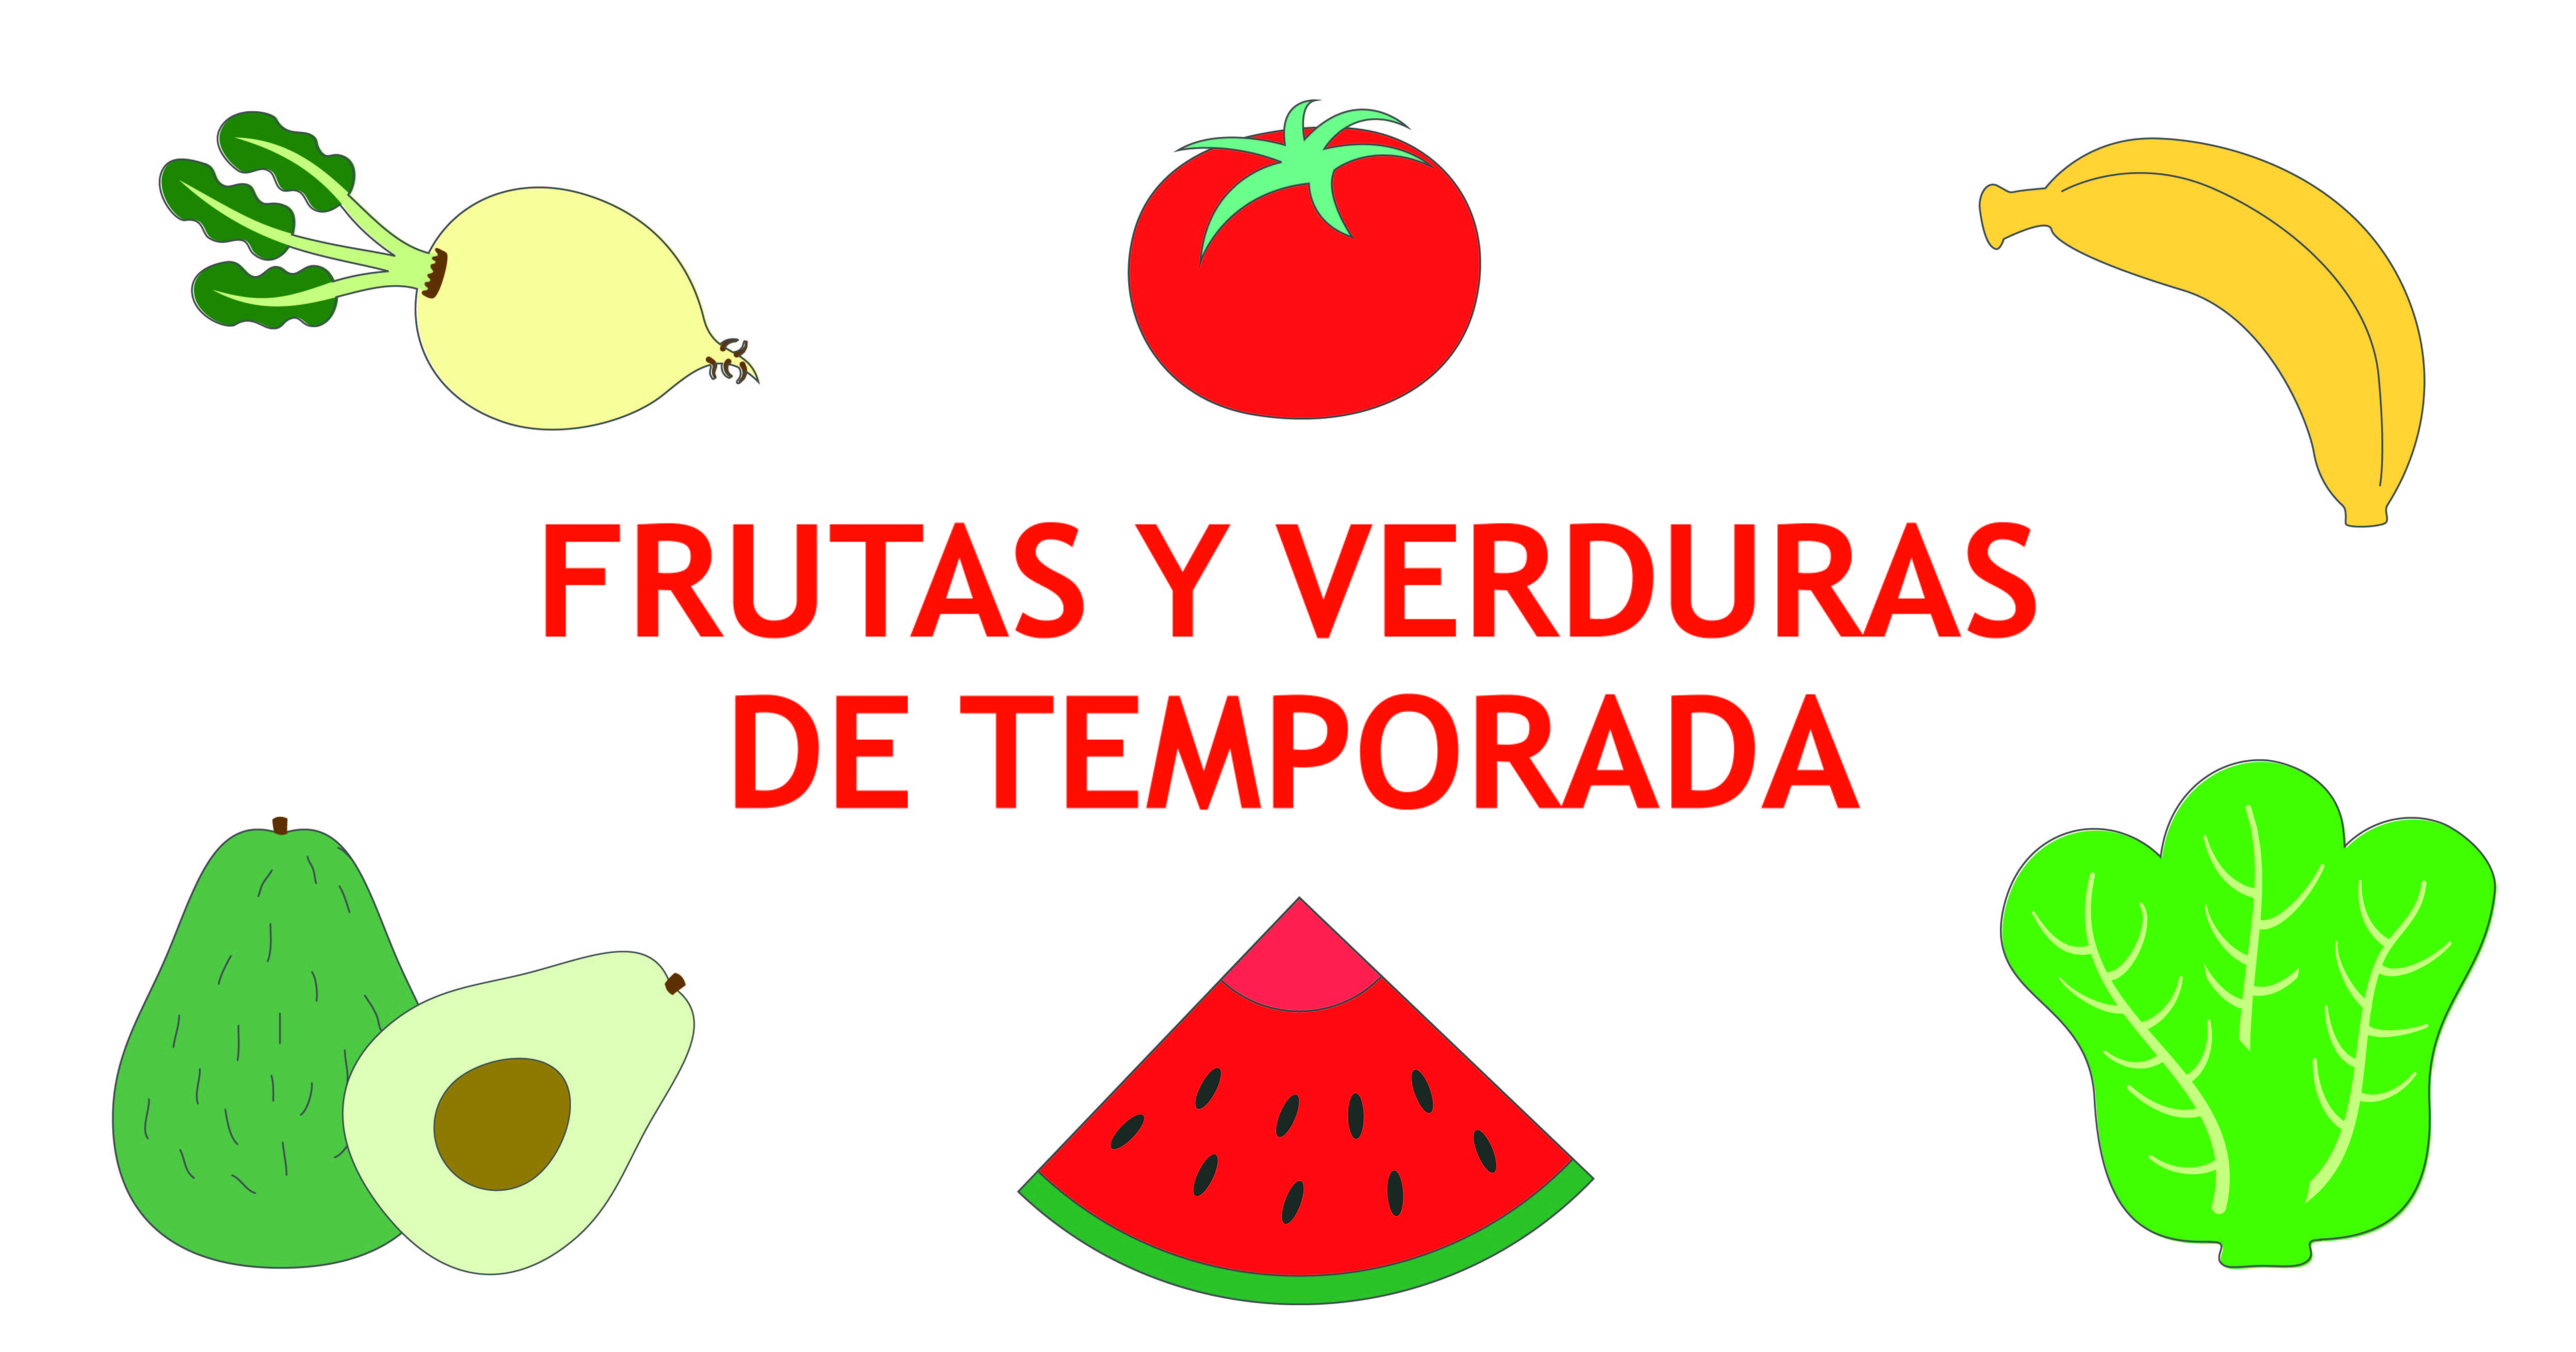 Frutas y verduras de la temporada de verano - Material útil para la familia